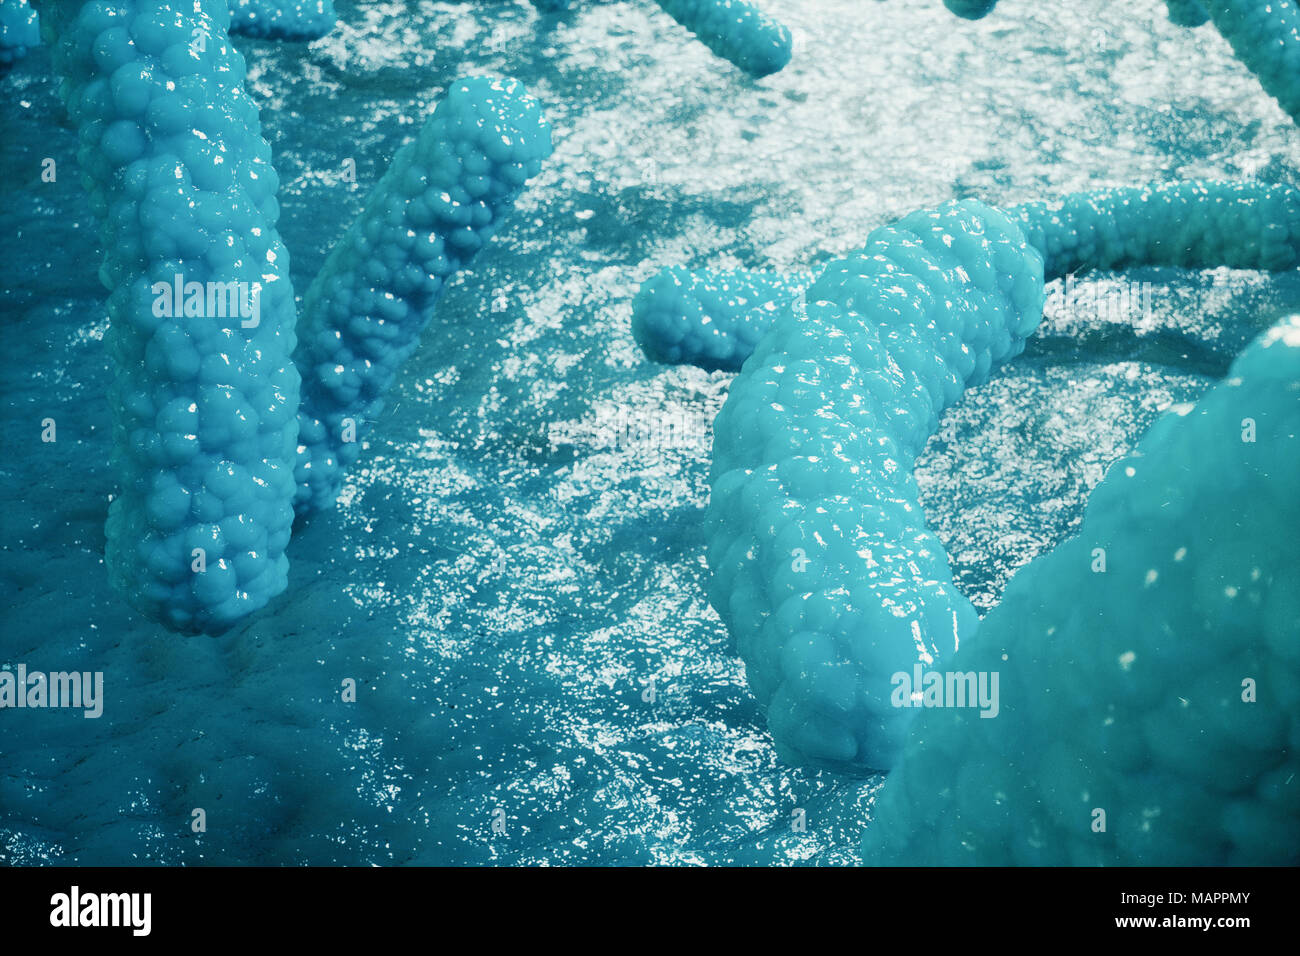 Ilustración 3D virus patógenos causantes de infección en el organismo huésped. Epidemia de enfermedades virales. Resumen Antecedentes el virus. Virus, bacterias, células del organismo infectado. Foto de stock